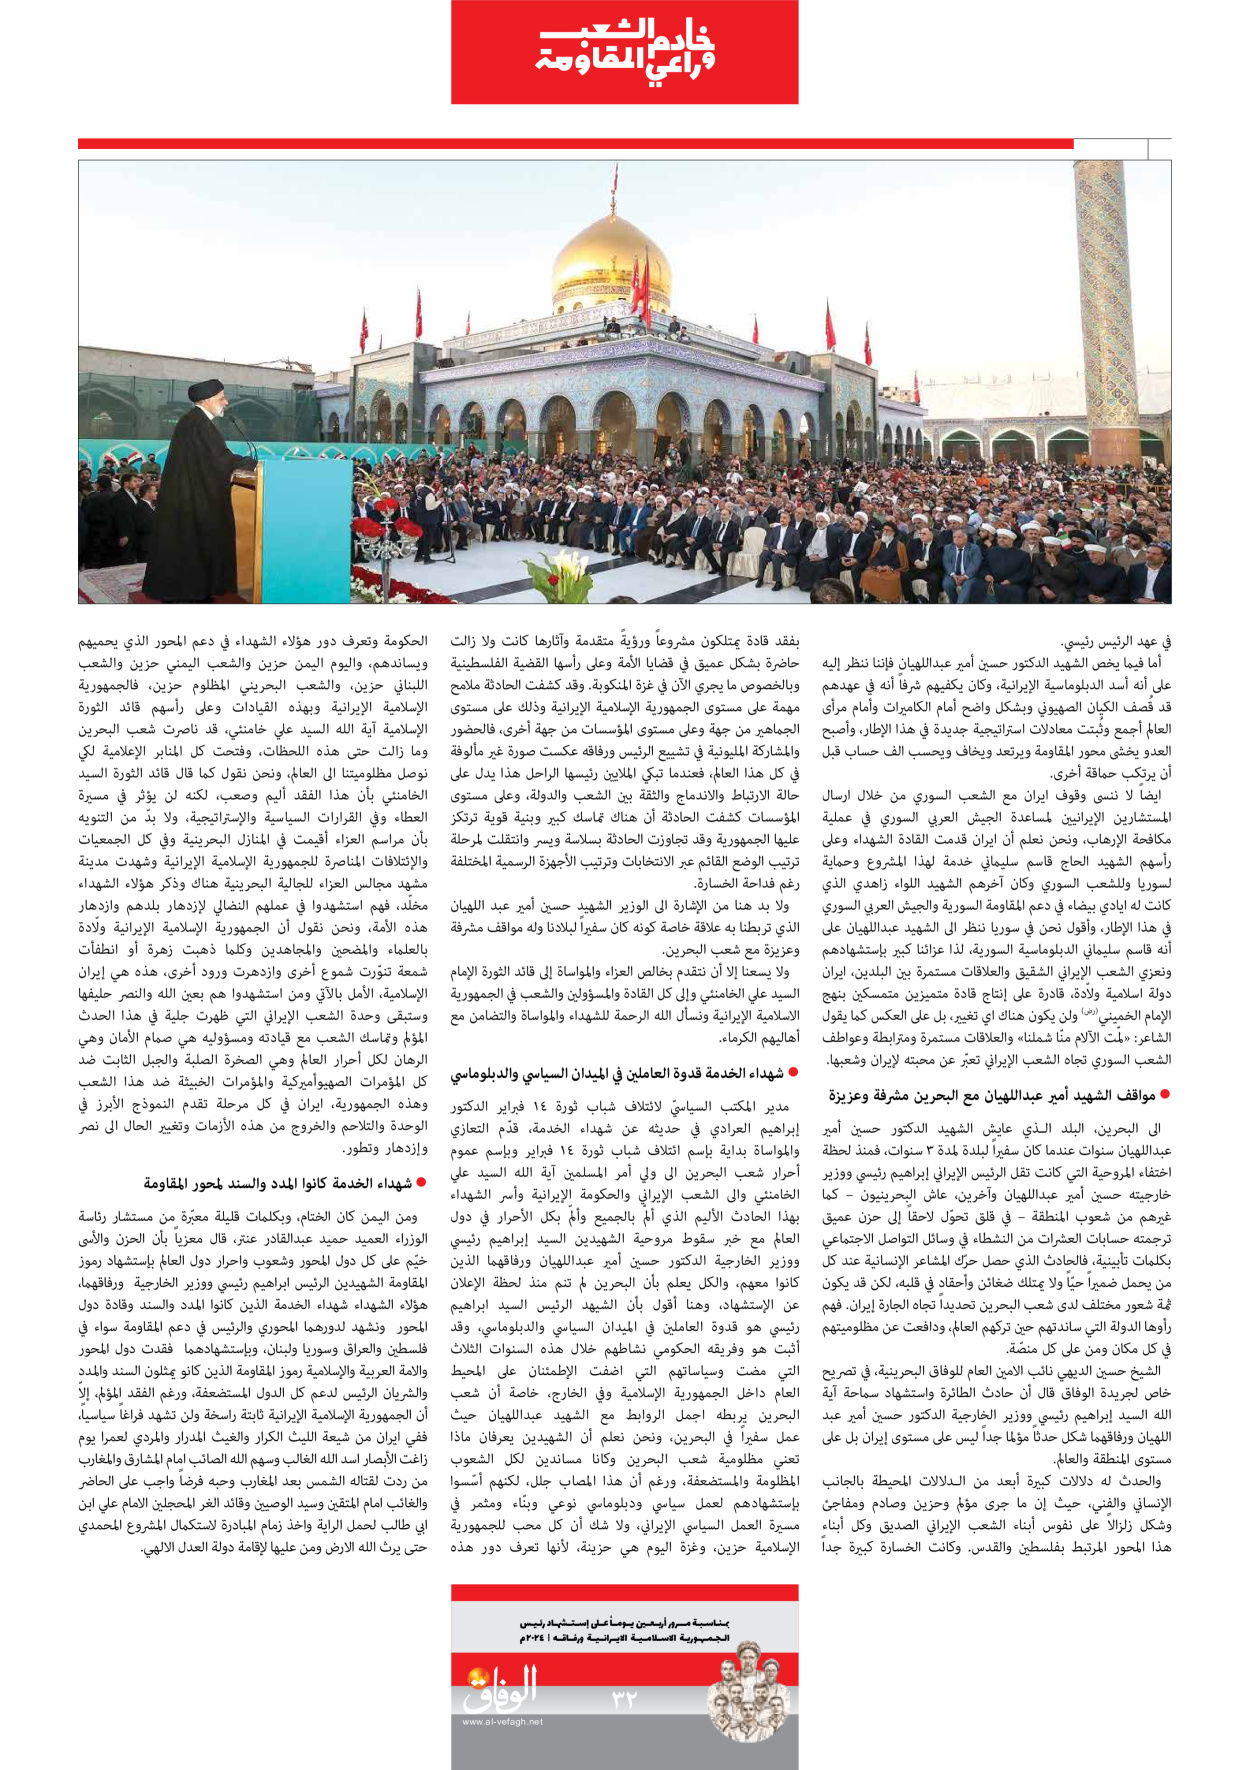 صحیفة ایران الدولیة الوفاق - ملحق ویژه نامه چهلم شهید رییسی - ٢٩ يونيو ٢٠٢٤ - الصفحة ۳۲